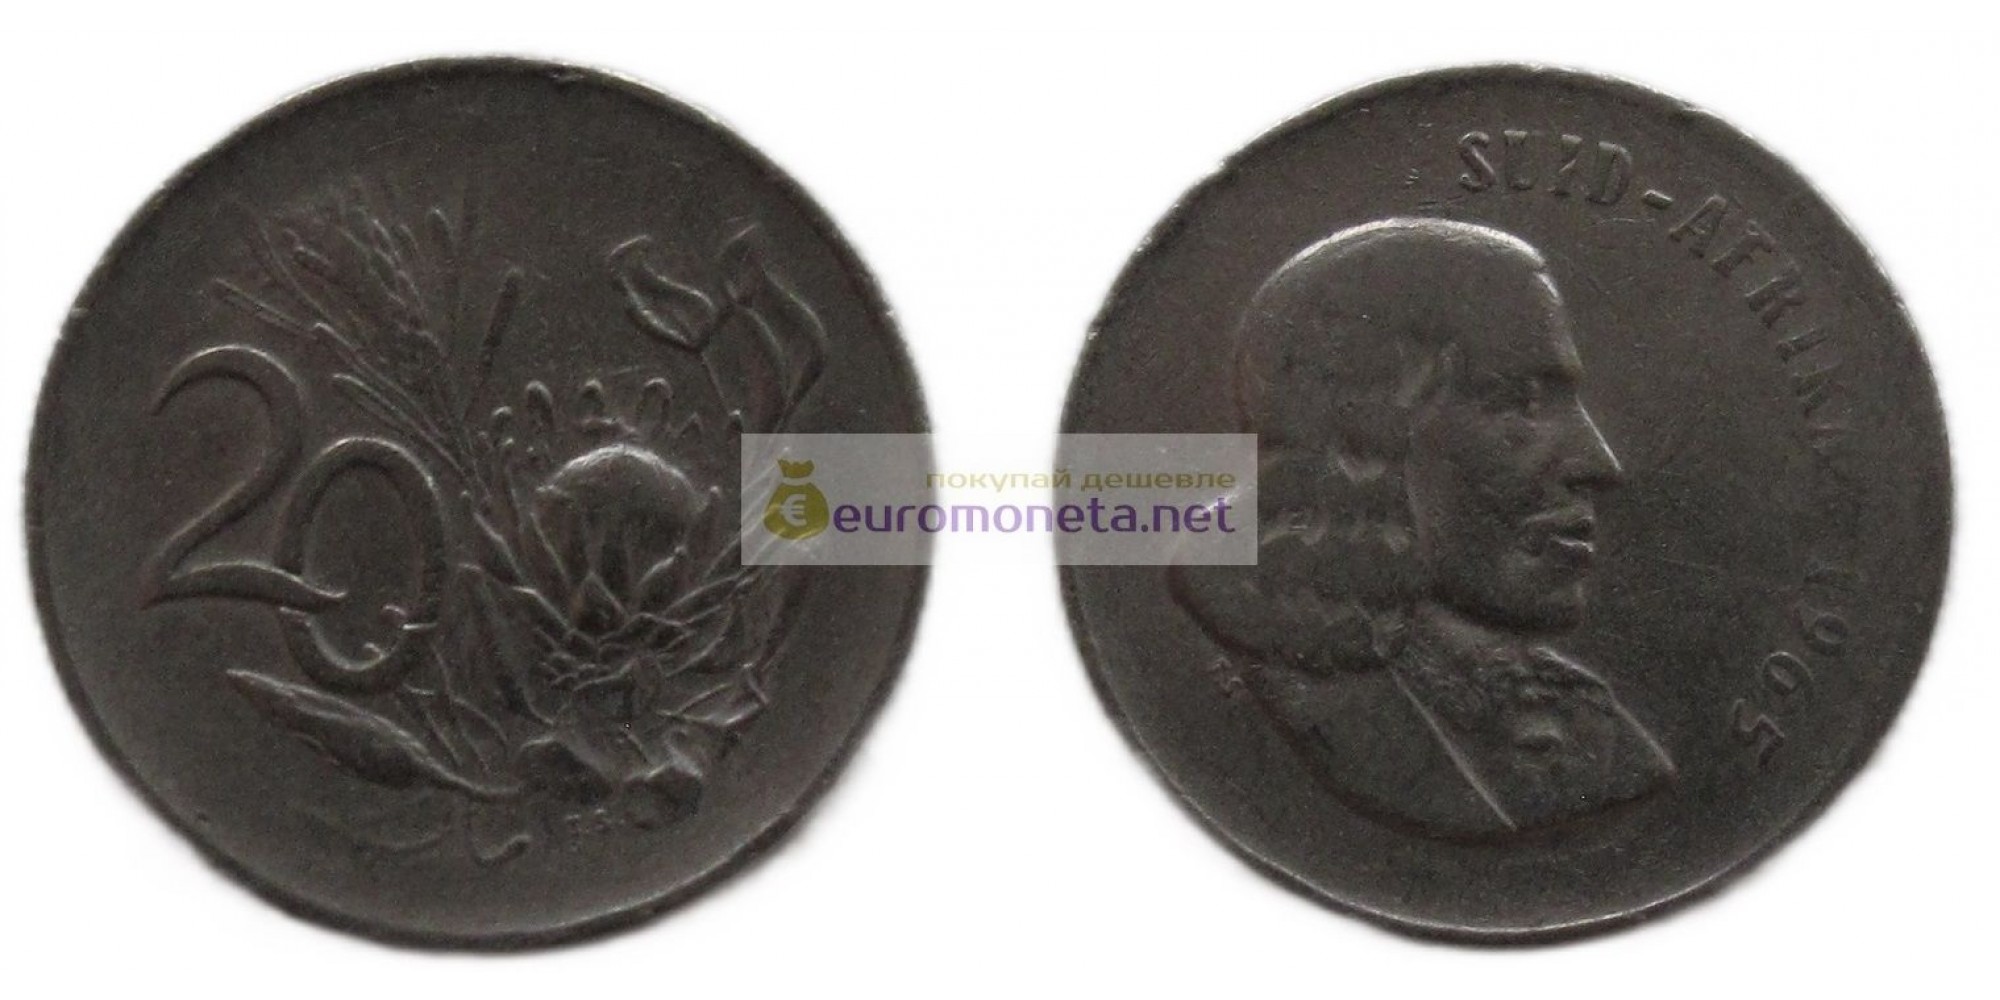 (ЮАР) Южно-Африканская Республика 20 центов 1965 год. Надпись на языке африкаанс - "SUID-AFRIKA".